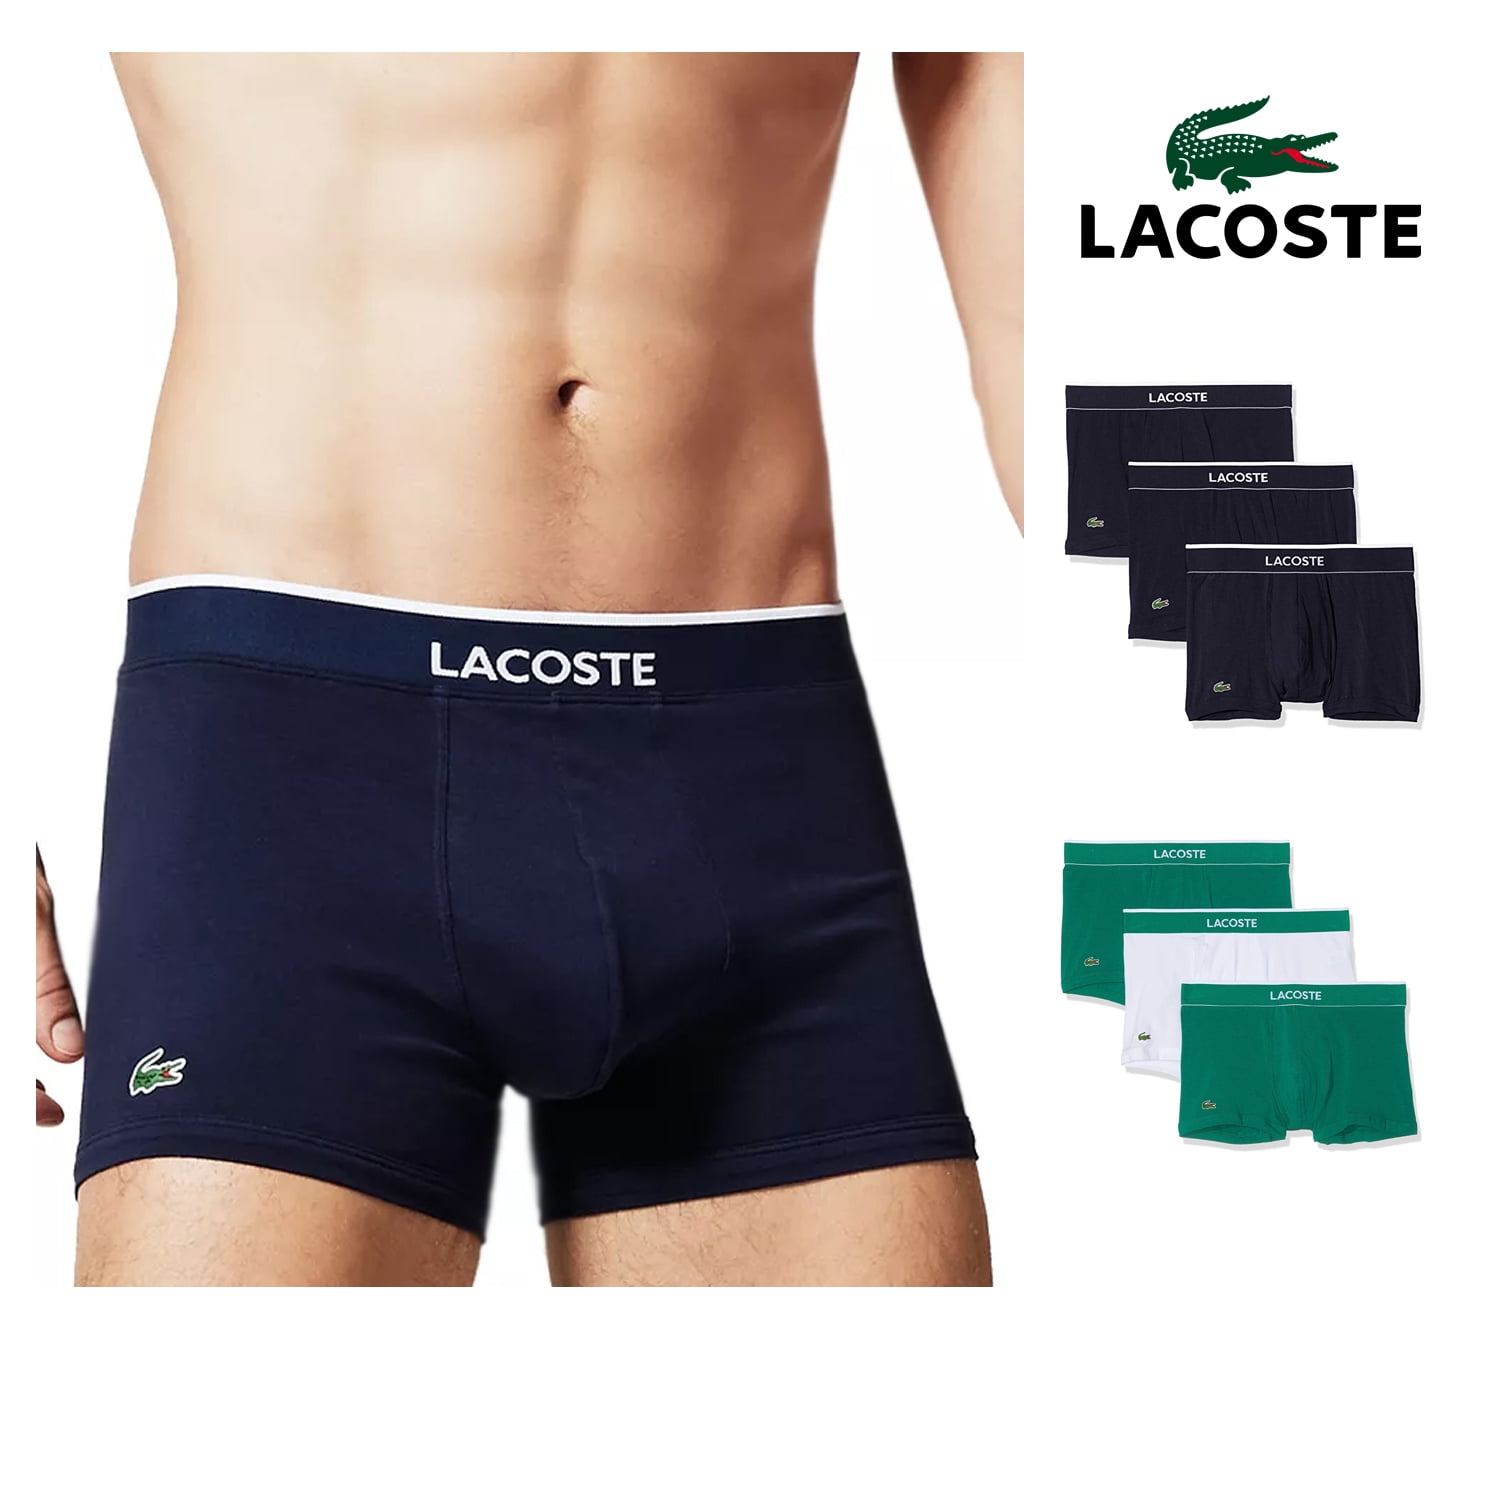 Lacoste - Lacoste Men's Cotton Stretch 